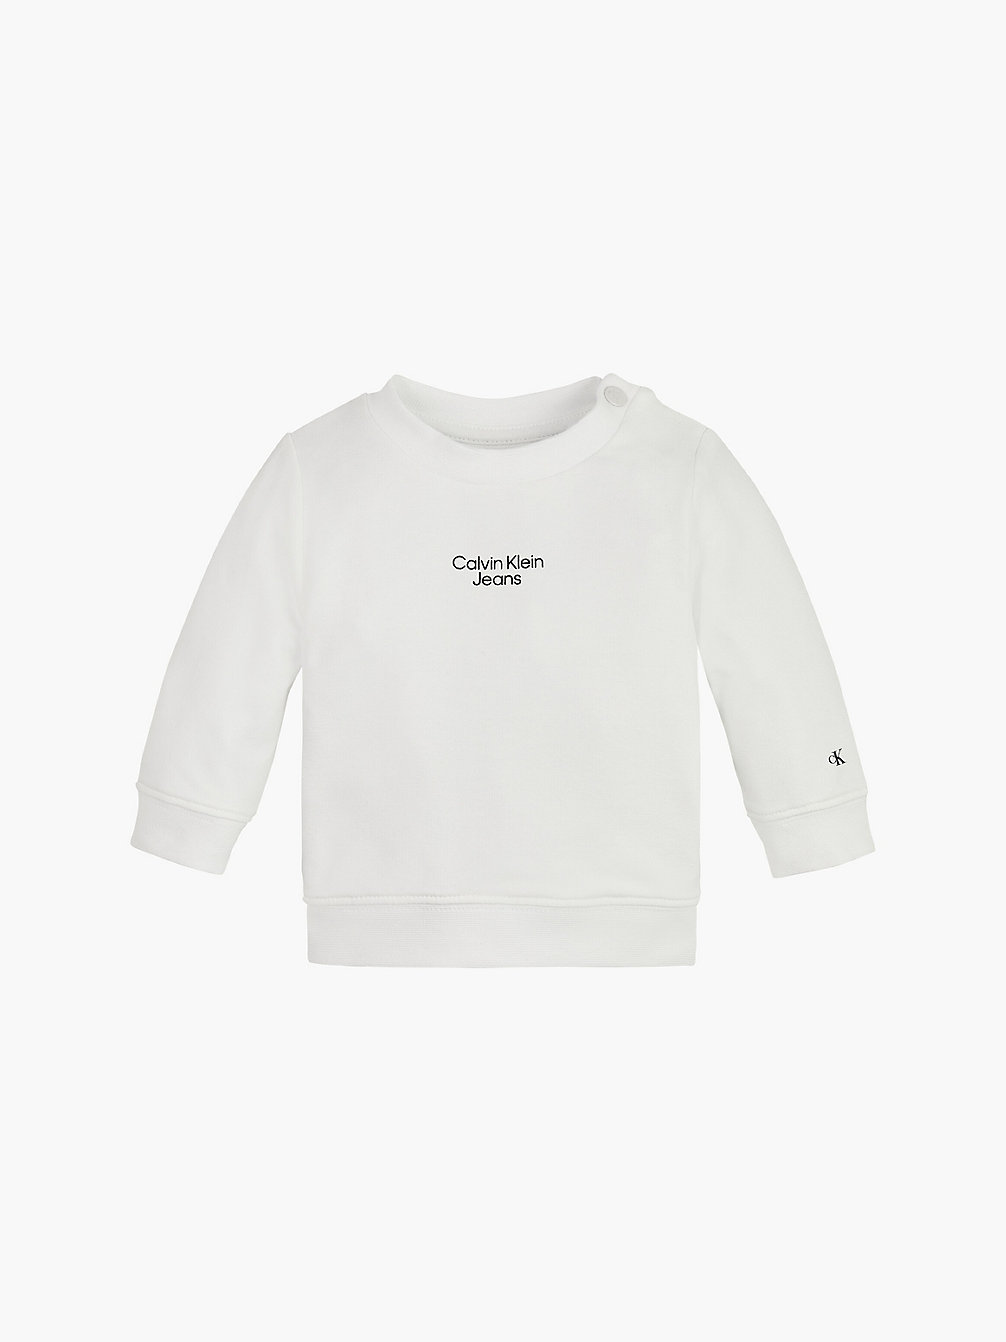 BRIGHT WHITE Newborn-Sweatshirt Van Biologisch Katoen undefined newborn Calvin Klein